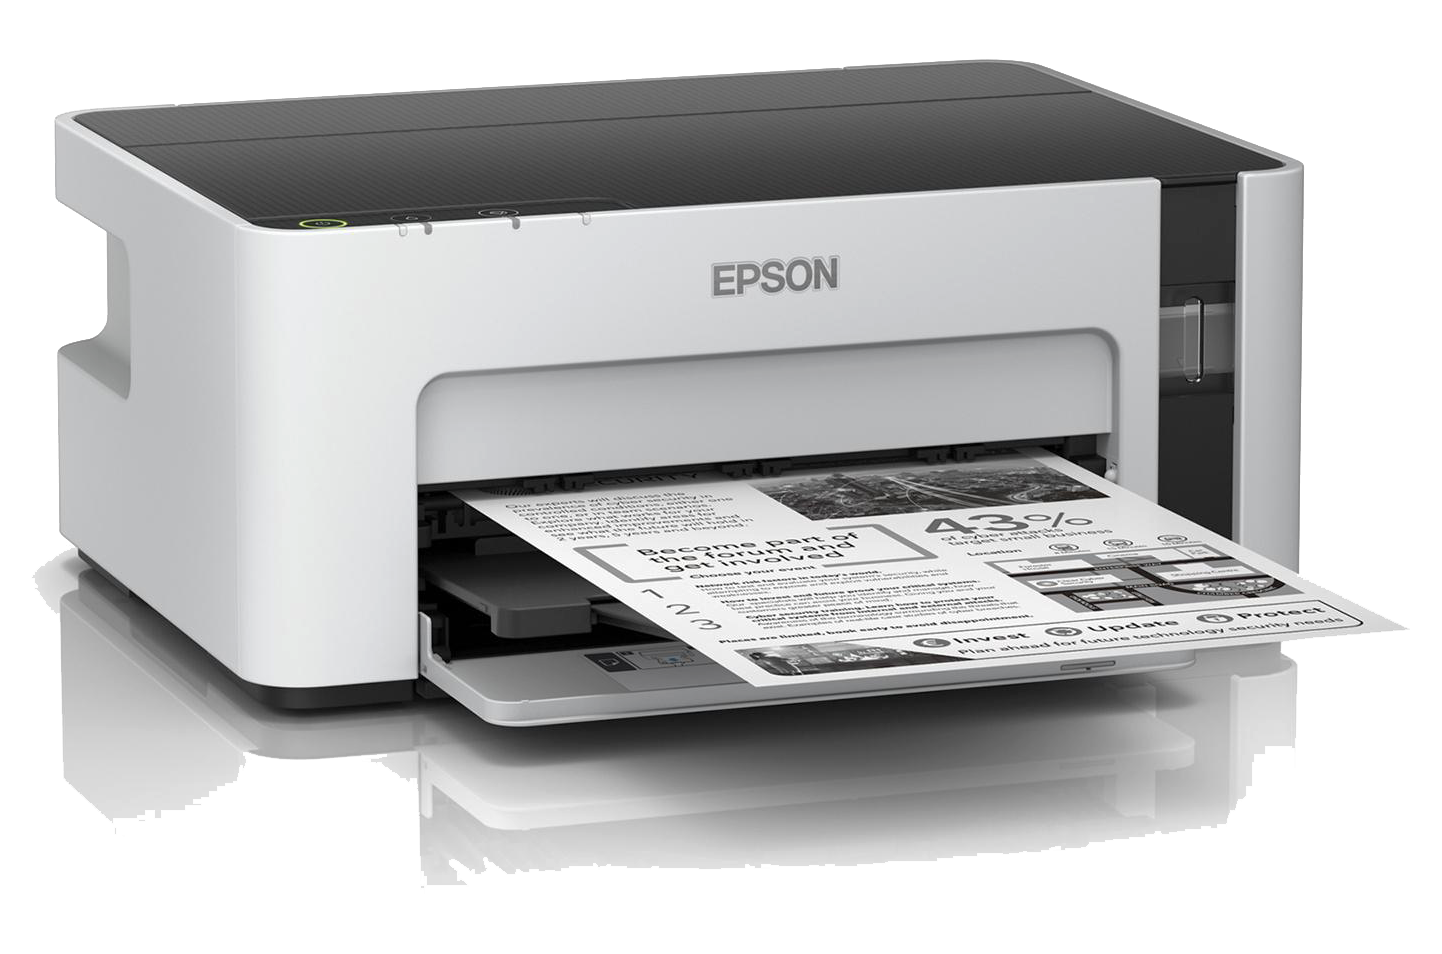 เครื่องพิมพ์ขาวดำ, Epson M1100, เครื่องพิมพ์ Epson, Printer Epson, ปริ้นเตอร์, เครื่องพิมพ์